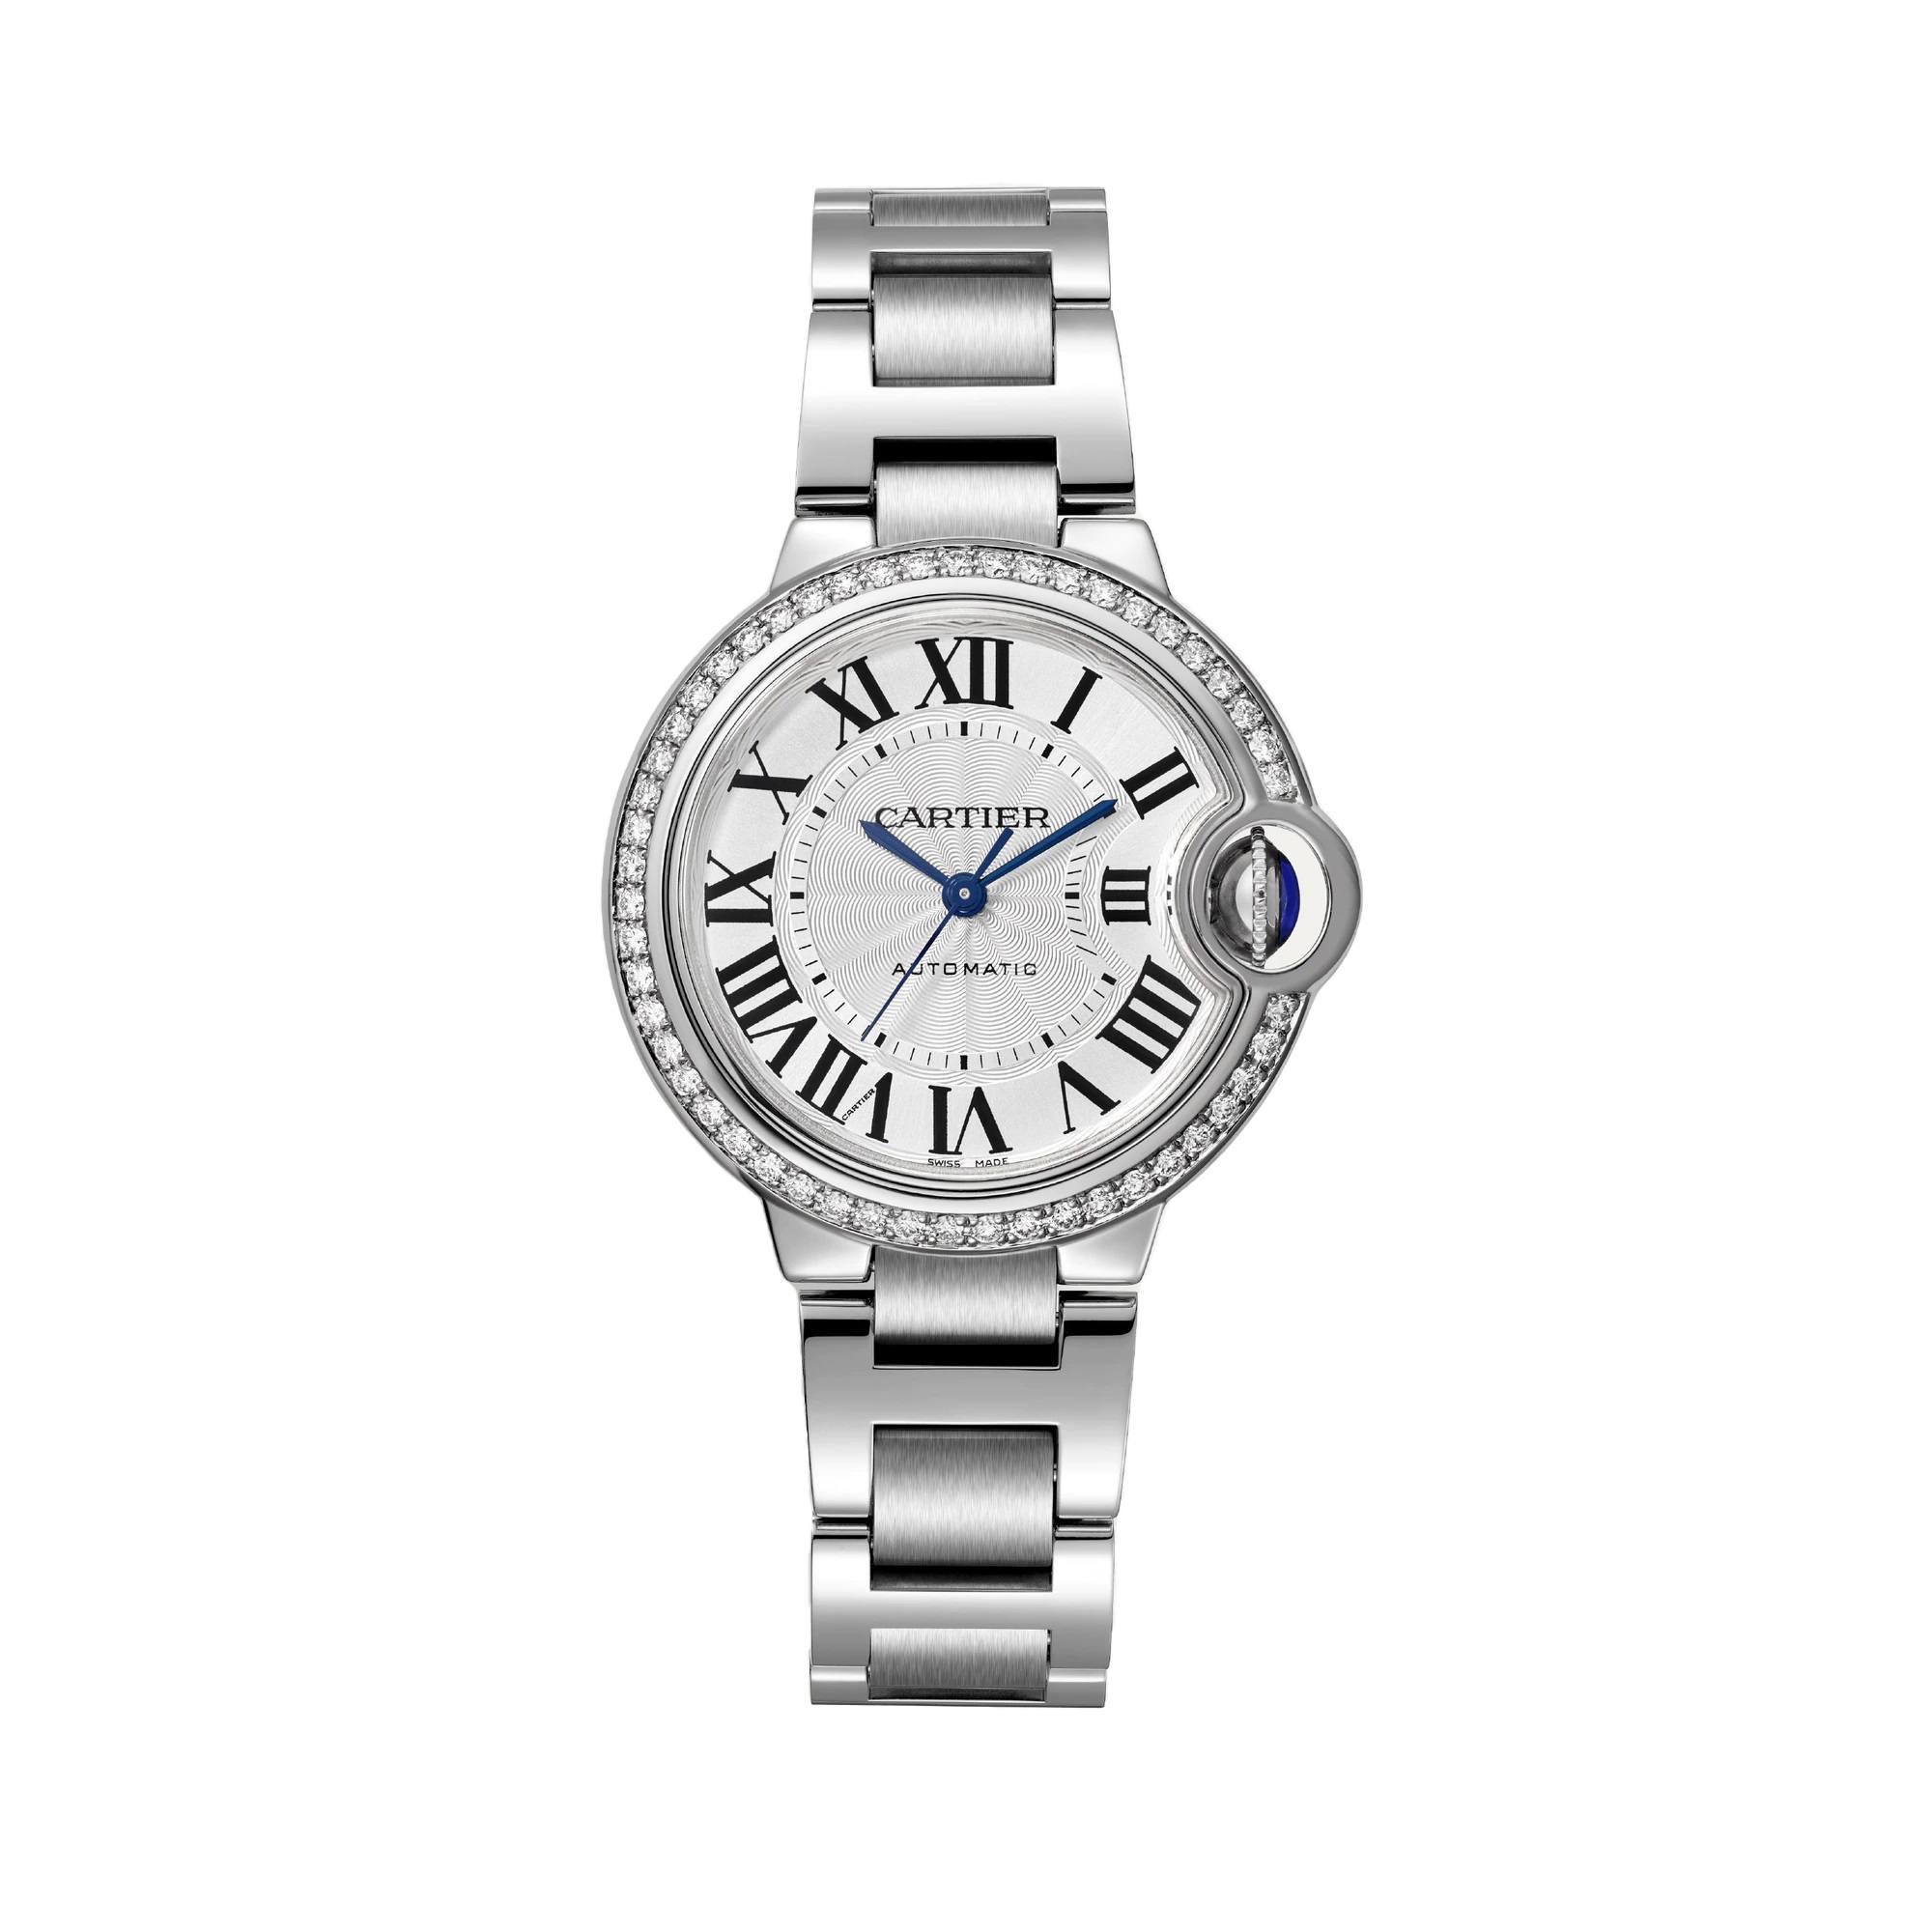 Ballon Bleu de Cartier Watch, Silver Guilloche Dial with Diamonds, 33mm